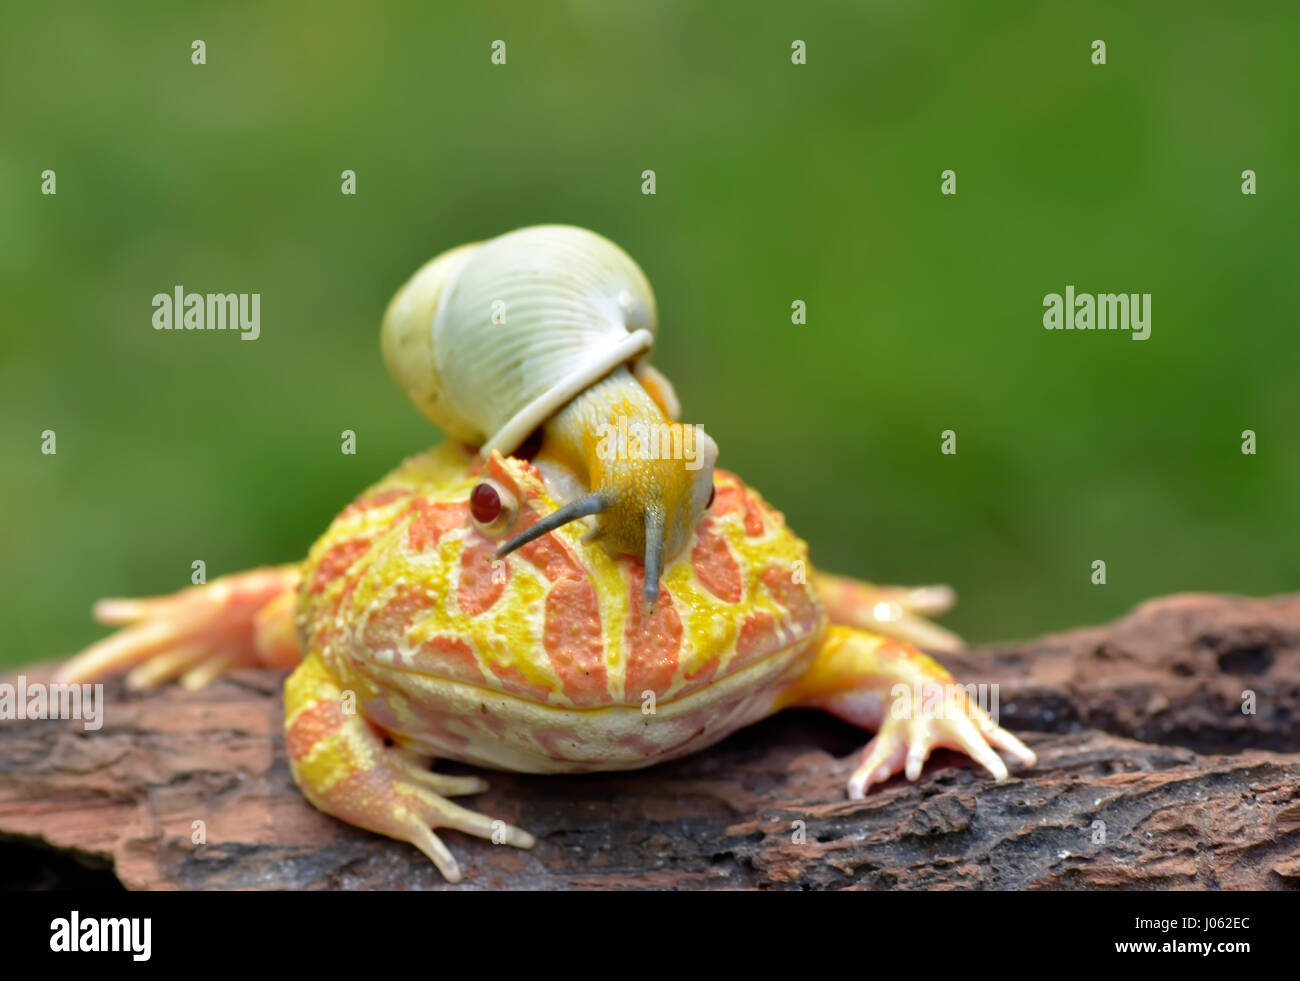 TANGERANG, Indonesien: Witzige Bilder zeigen einen bunten Pacman Frosch eine Schnecke wie einen Helm tragen, während sie auf einem Baumstamm entspannt. Baureihe ungewöhnliche Schnappschüsse von dieser Show "Schnecke-erfüllt", die unbeirrt Amphibie strike eine Pose für die Kamera, sichtlich stolz zu zeigen, seine neu gestalteten Kopfschmuck. Es ist nicht nur der Frosch, der mit seinen neu gewonnenen Freund bequem ist, wie die Schnecke zu sehen ist, selbst zu Hause, schnüffeln und Schiebe seinen Weg nach unten zu den Frosch Nase inspizieren zu machen. Lustige Bilder wurden vom Filialleiter Thomas Chandra (42) in der Nähe von Tangerang, Indonesien schnappte. Thomas Chandra / Medien Stockfoto